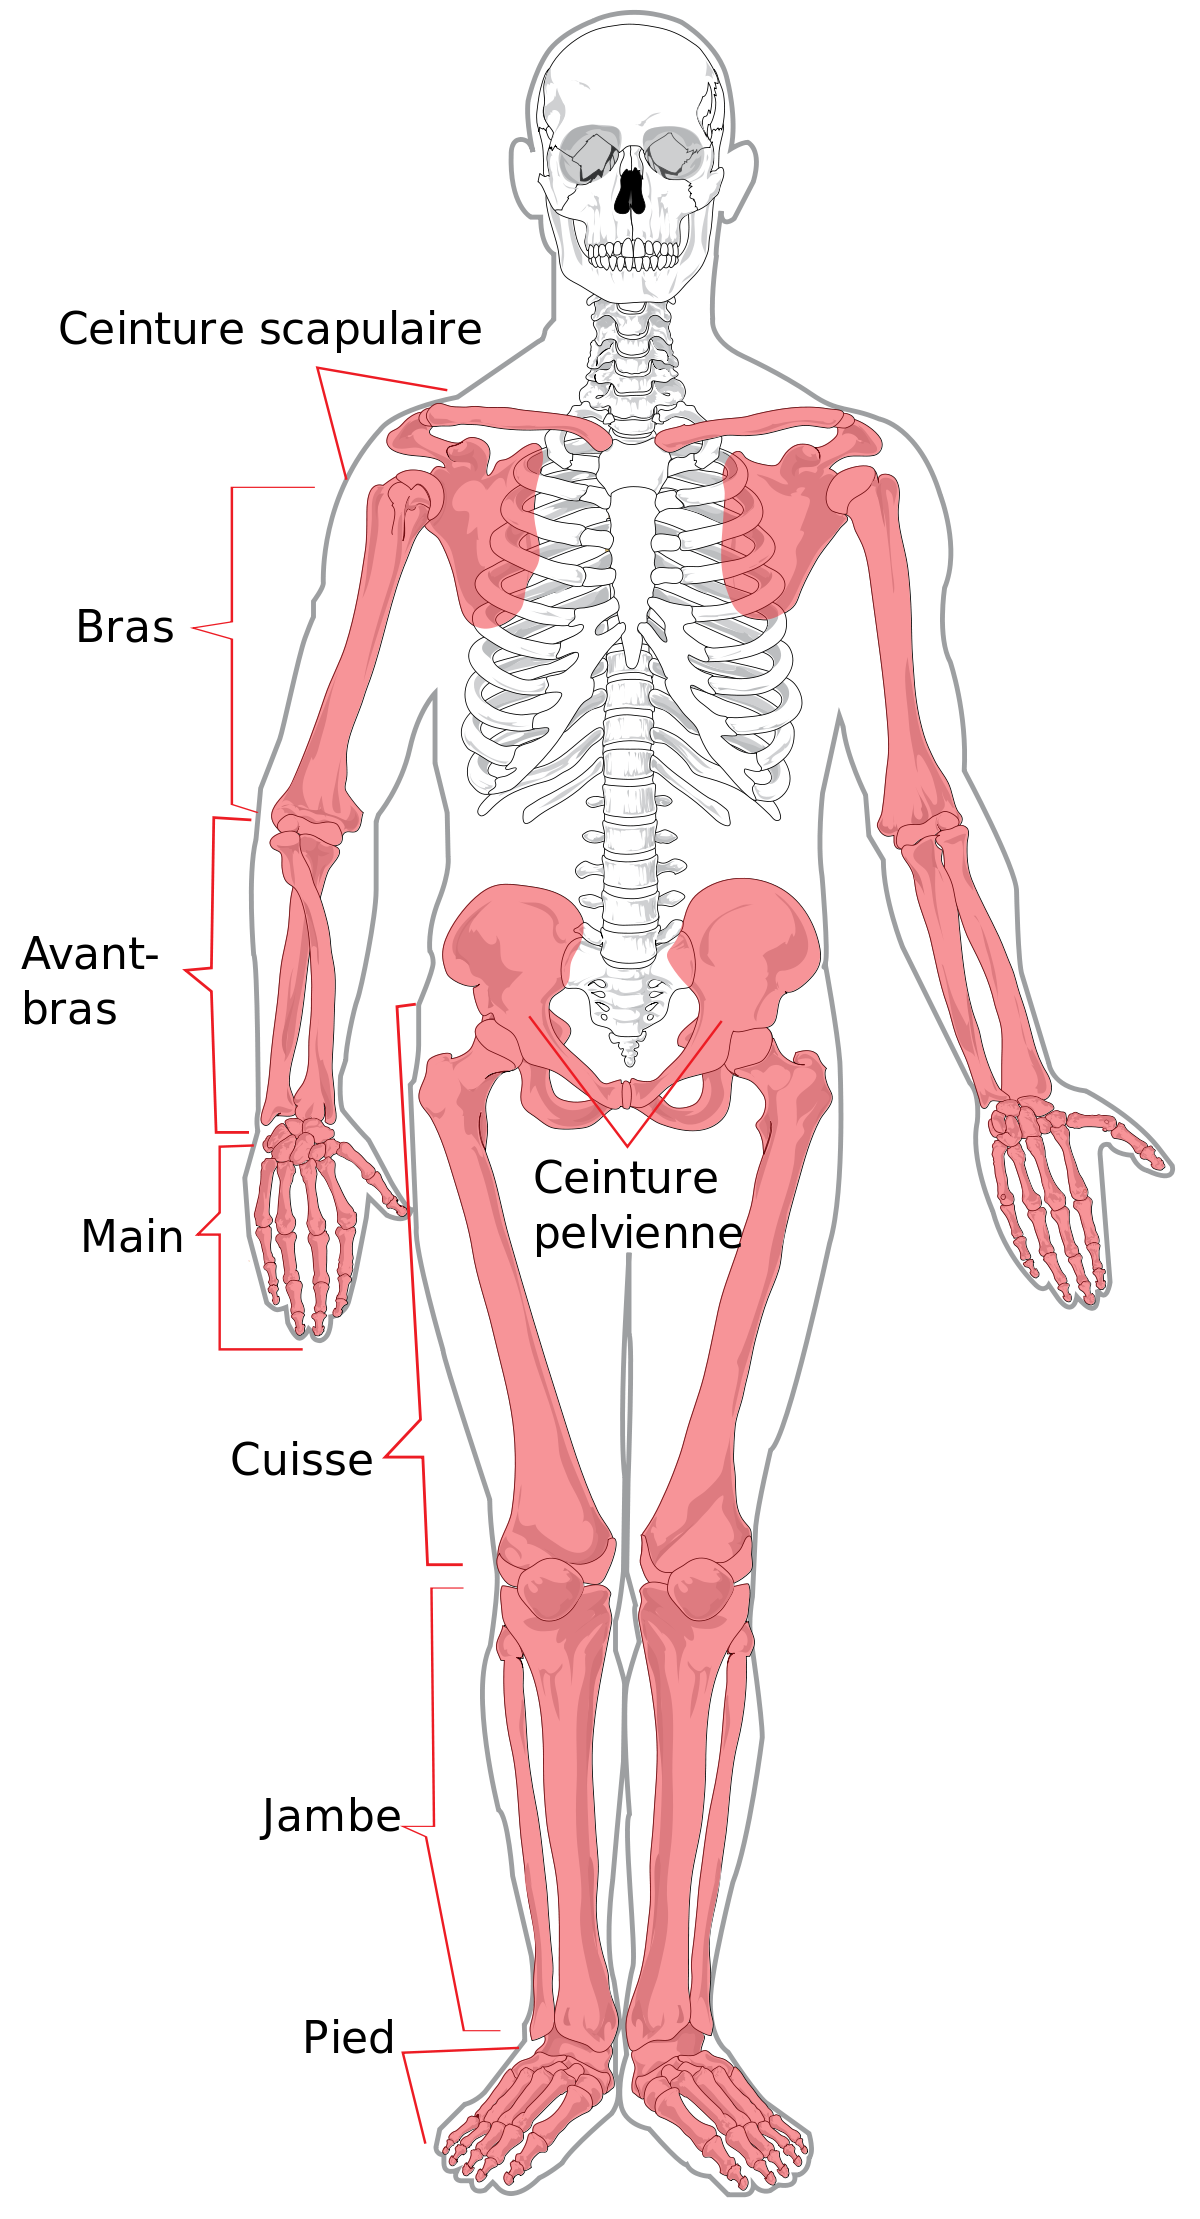 Quels sont les os du corps humain ?